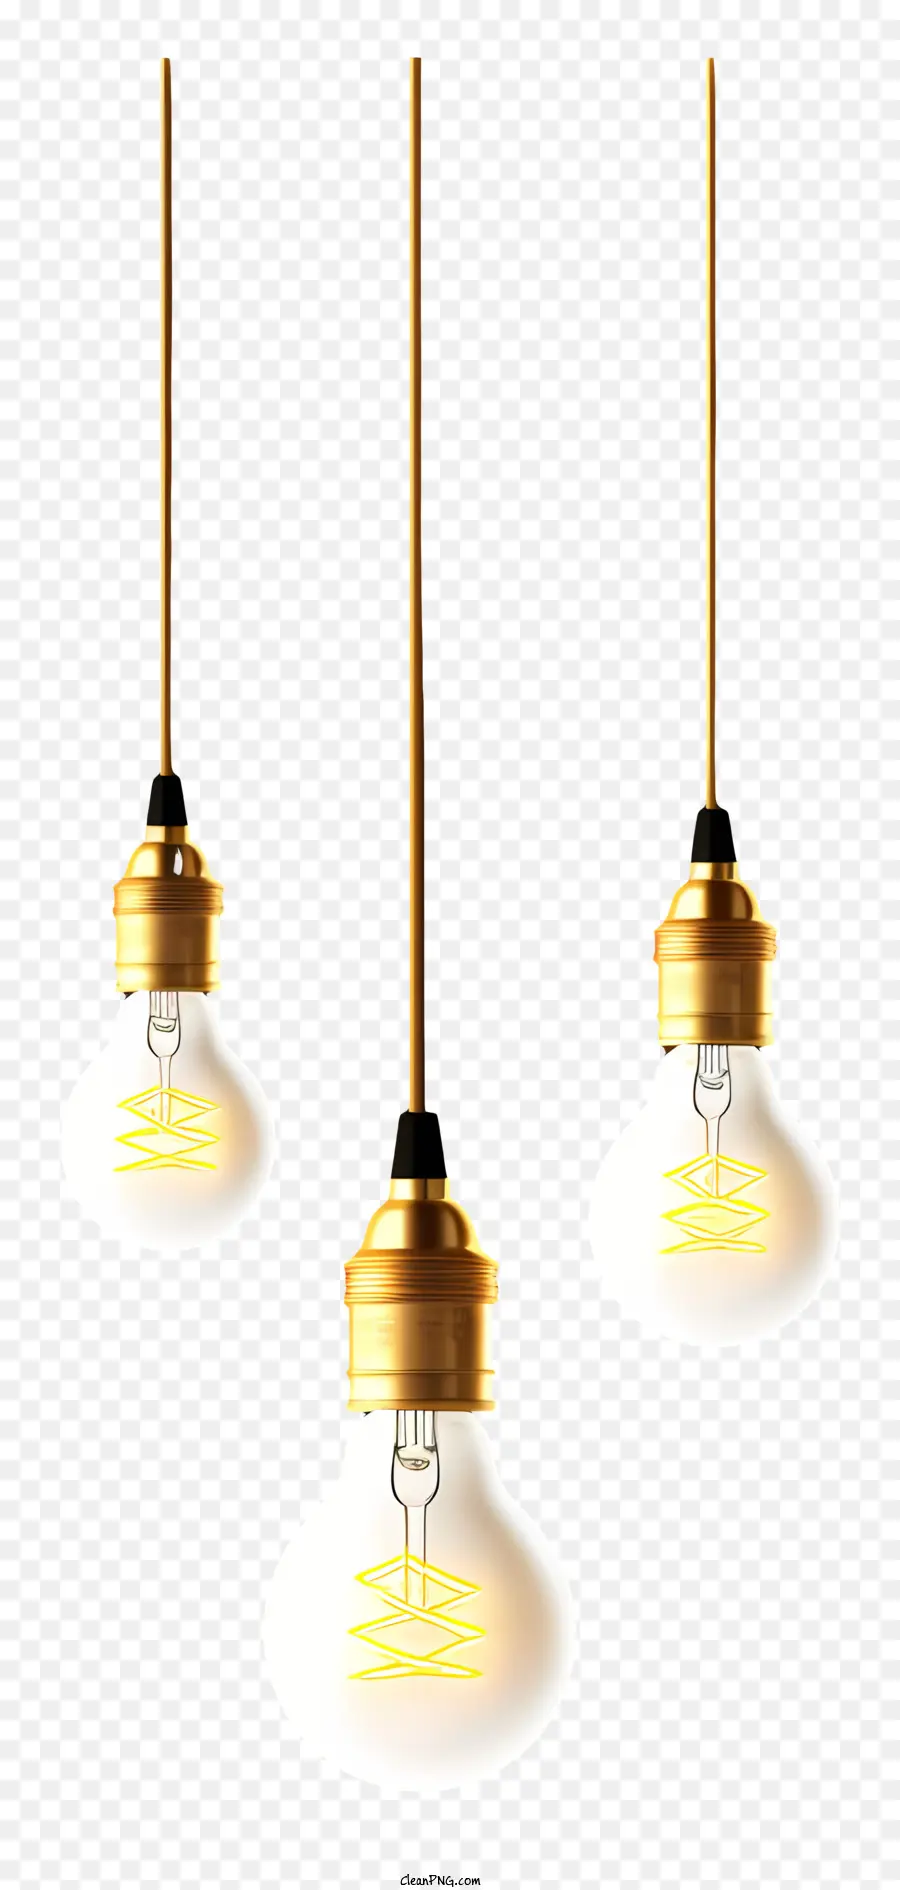 bóng đèn treo bóng đèn bóng đèn sợi đốt đèn led đèn trắng ấm - Ba bóng đèn có kích thước và màu sắc khác nhau